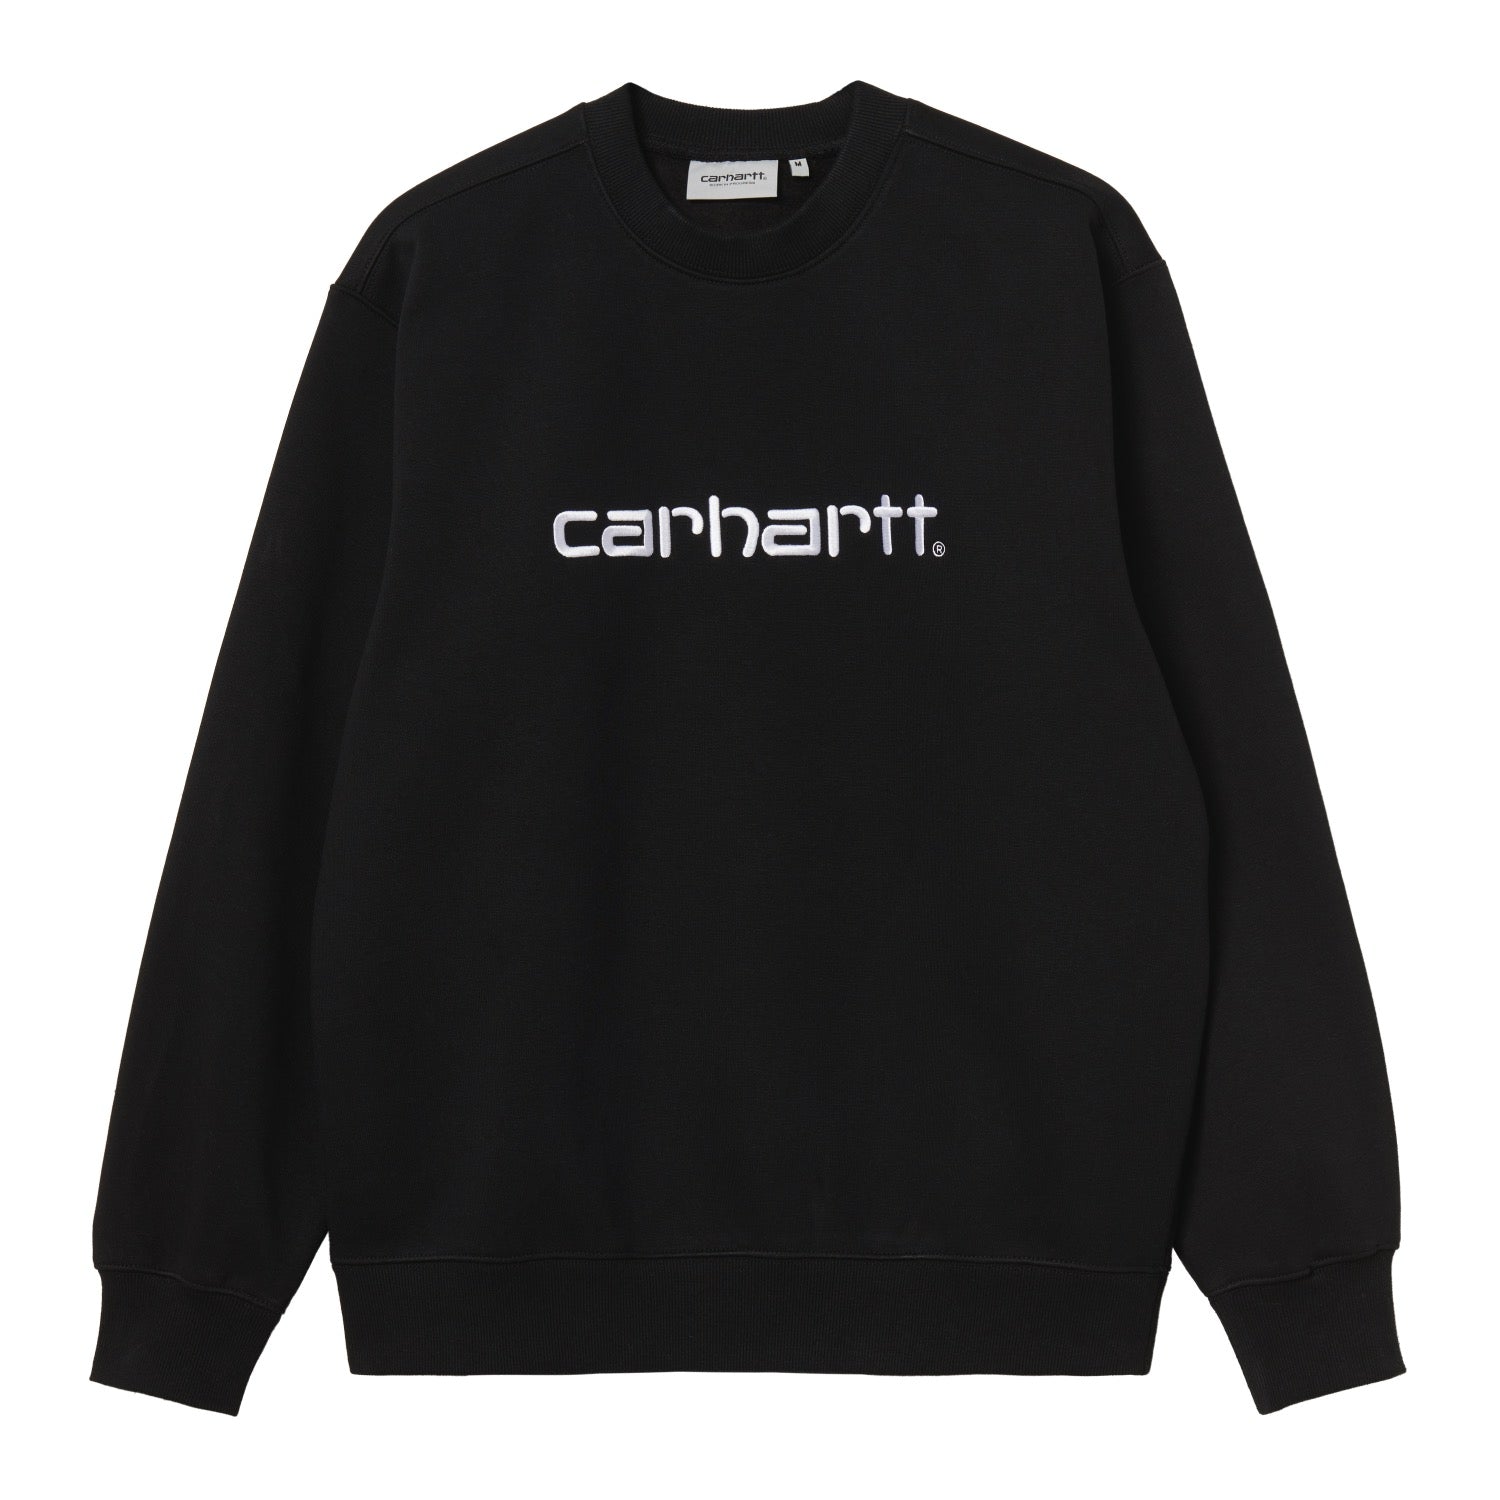 CARHARTT SWEAT - Black / White